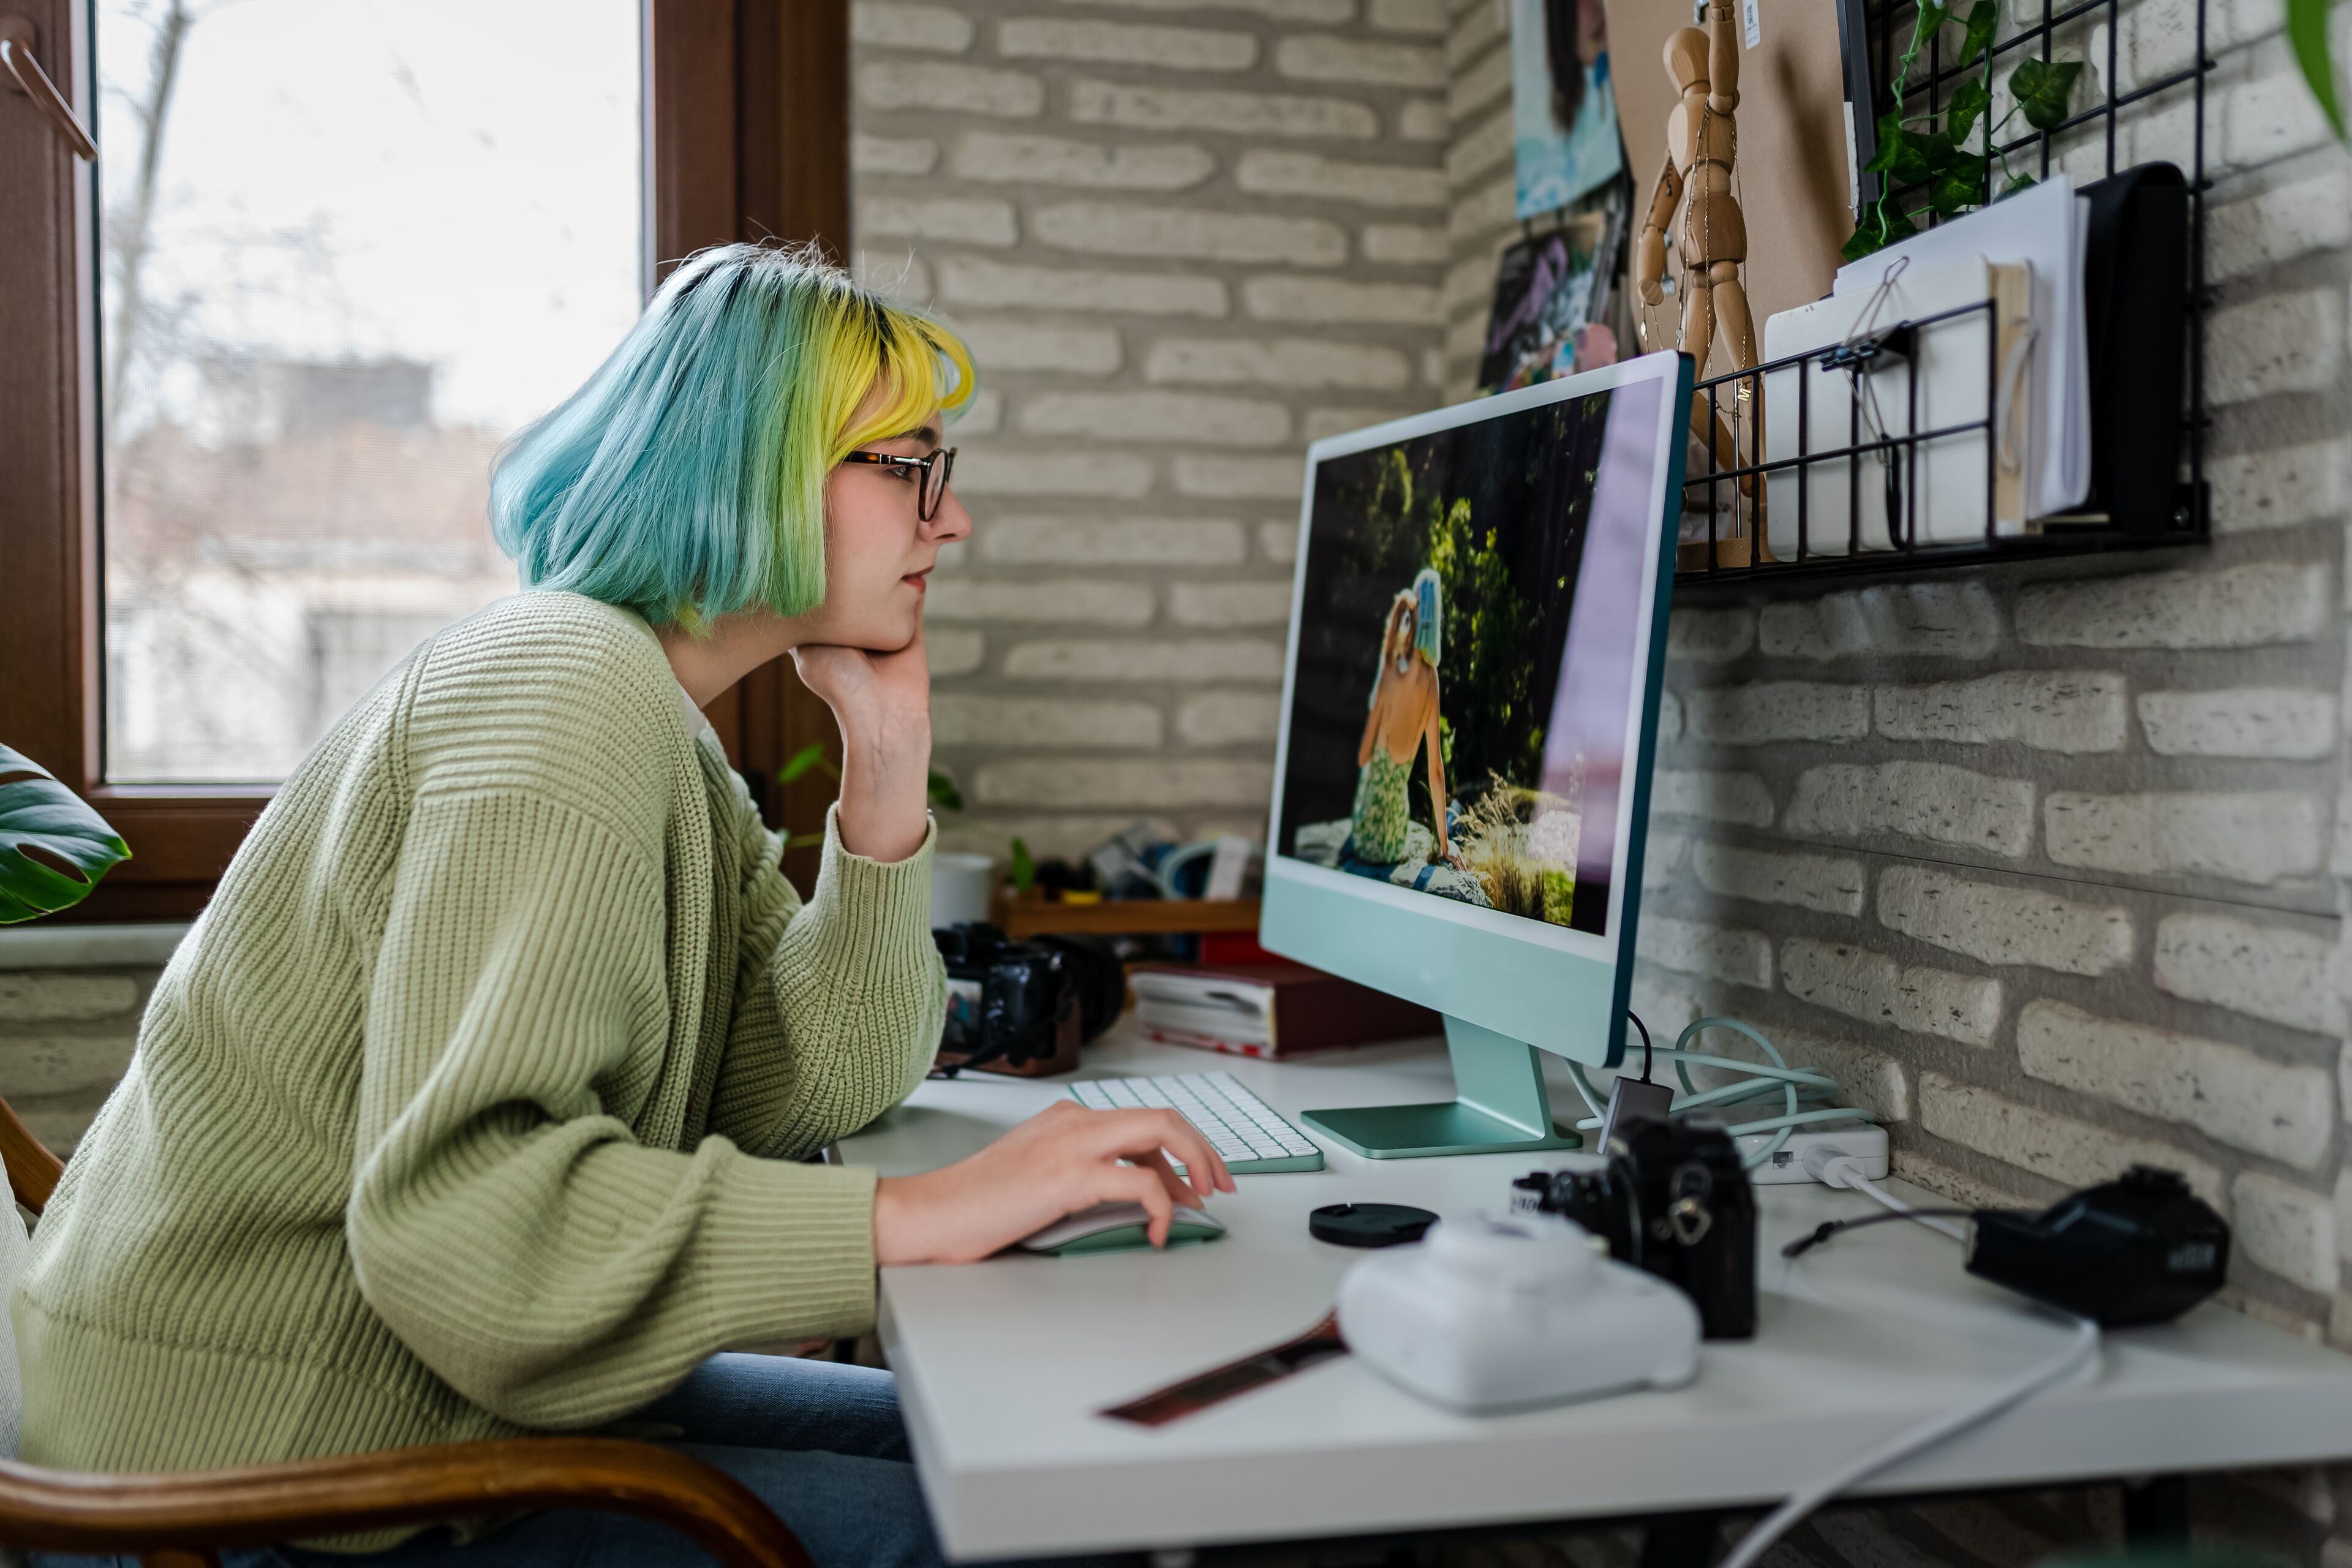 Una persona amb cabells de colors variats està immersa en la seva feina en un ordinador amb equip fotogràfic al voltant.